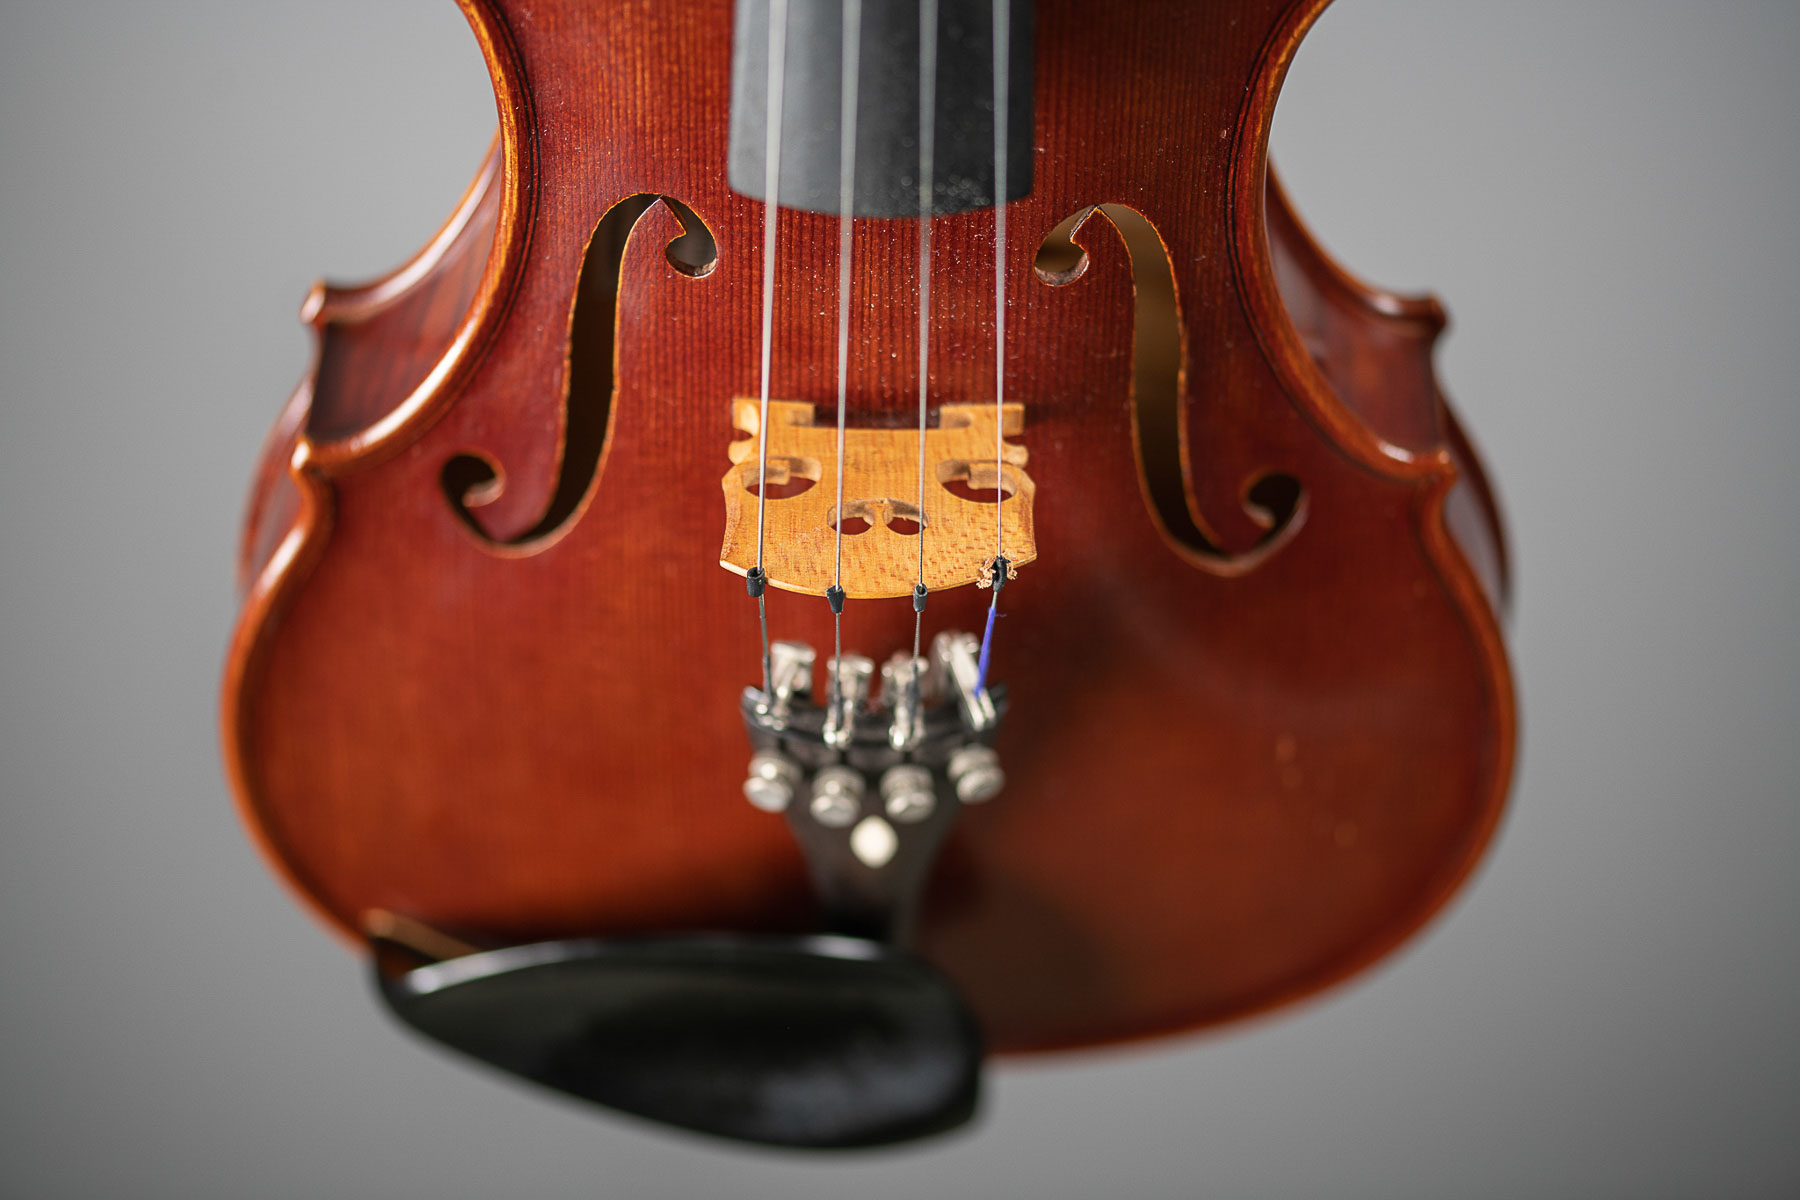 Eine Geige bzw. Violine vor grauem Hintergrund im Fotostudio fotografiert. Der Steg der Geige im Detail.